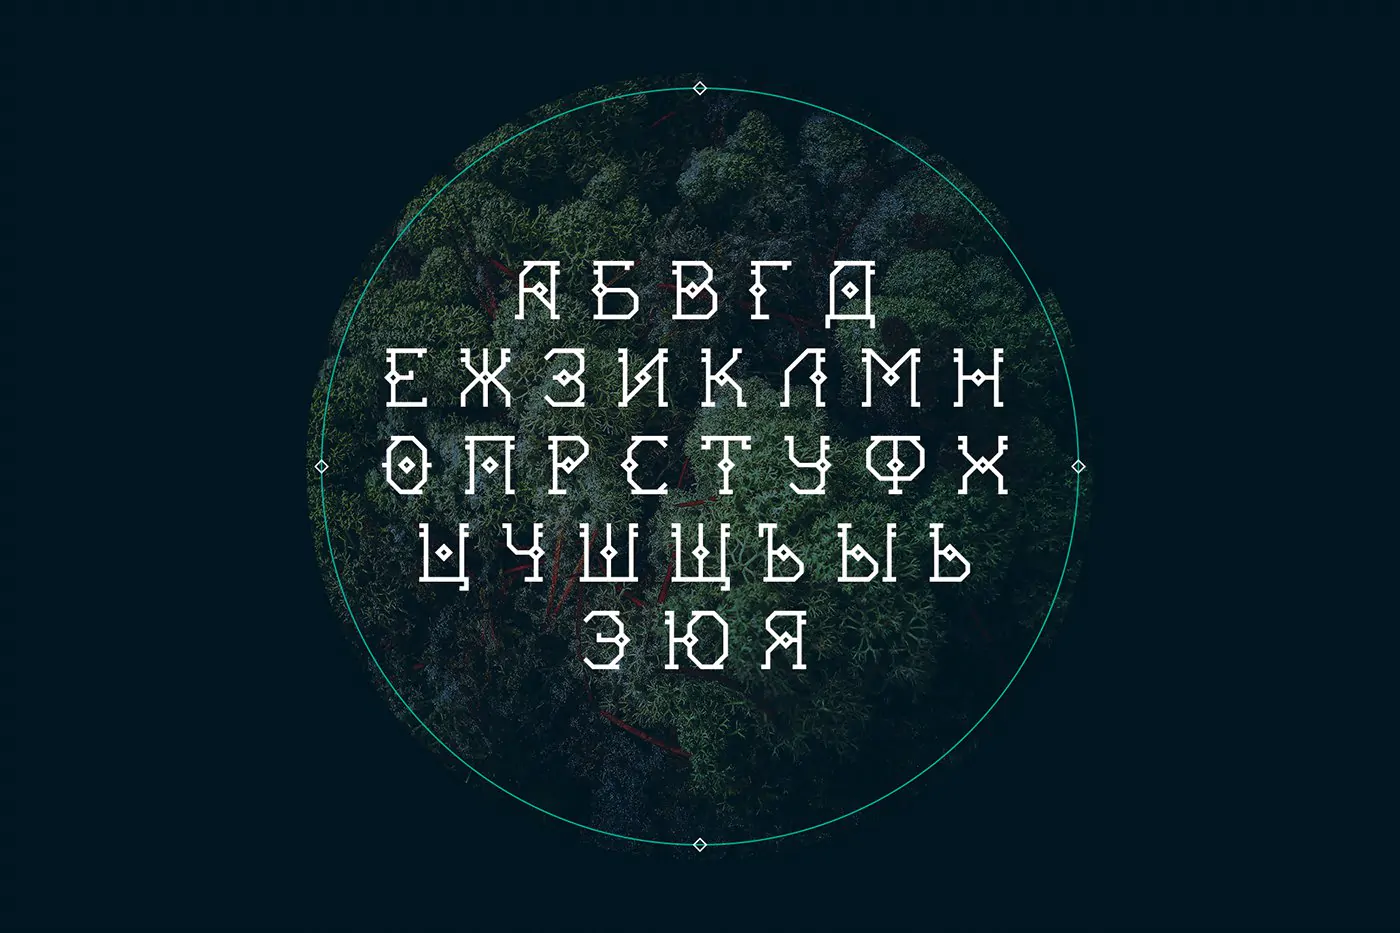 Шрифт KOMI Cyrillic